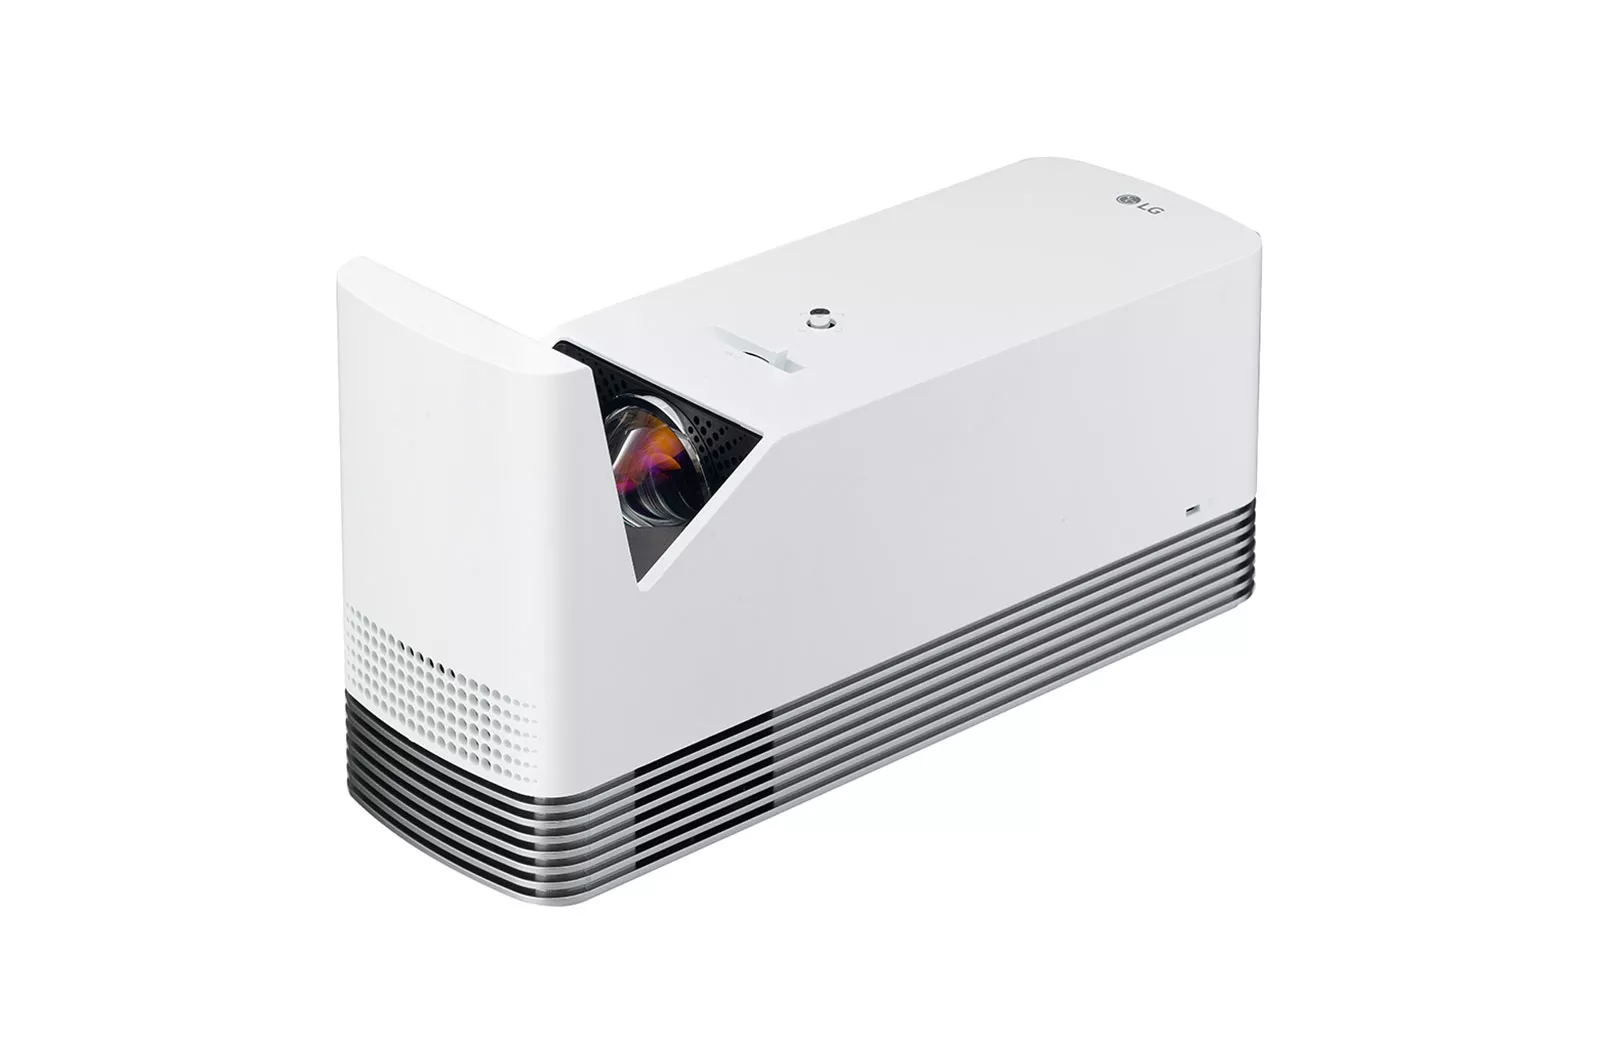 Vente LG HF85LSR DLP Laser Ultra courte focale FHD LG au meilleur prix - visuel 6